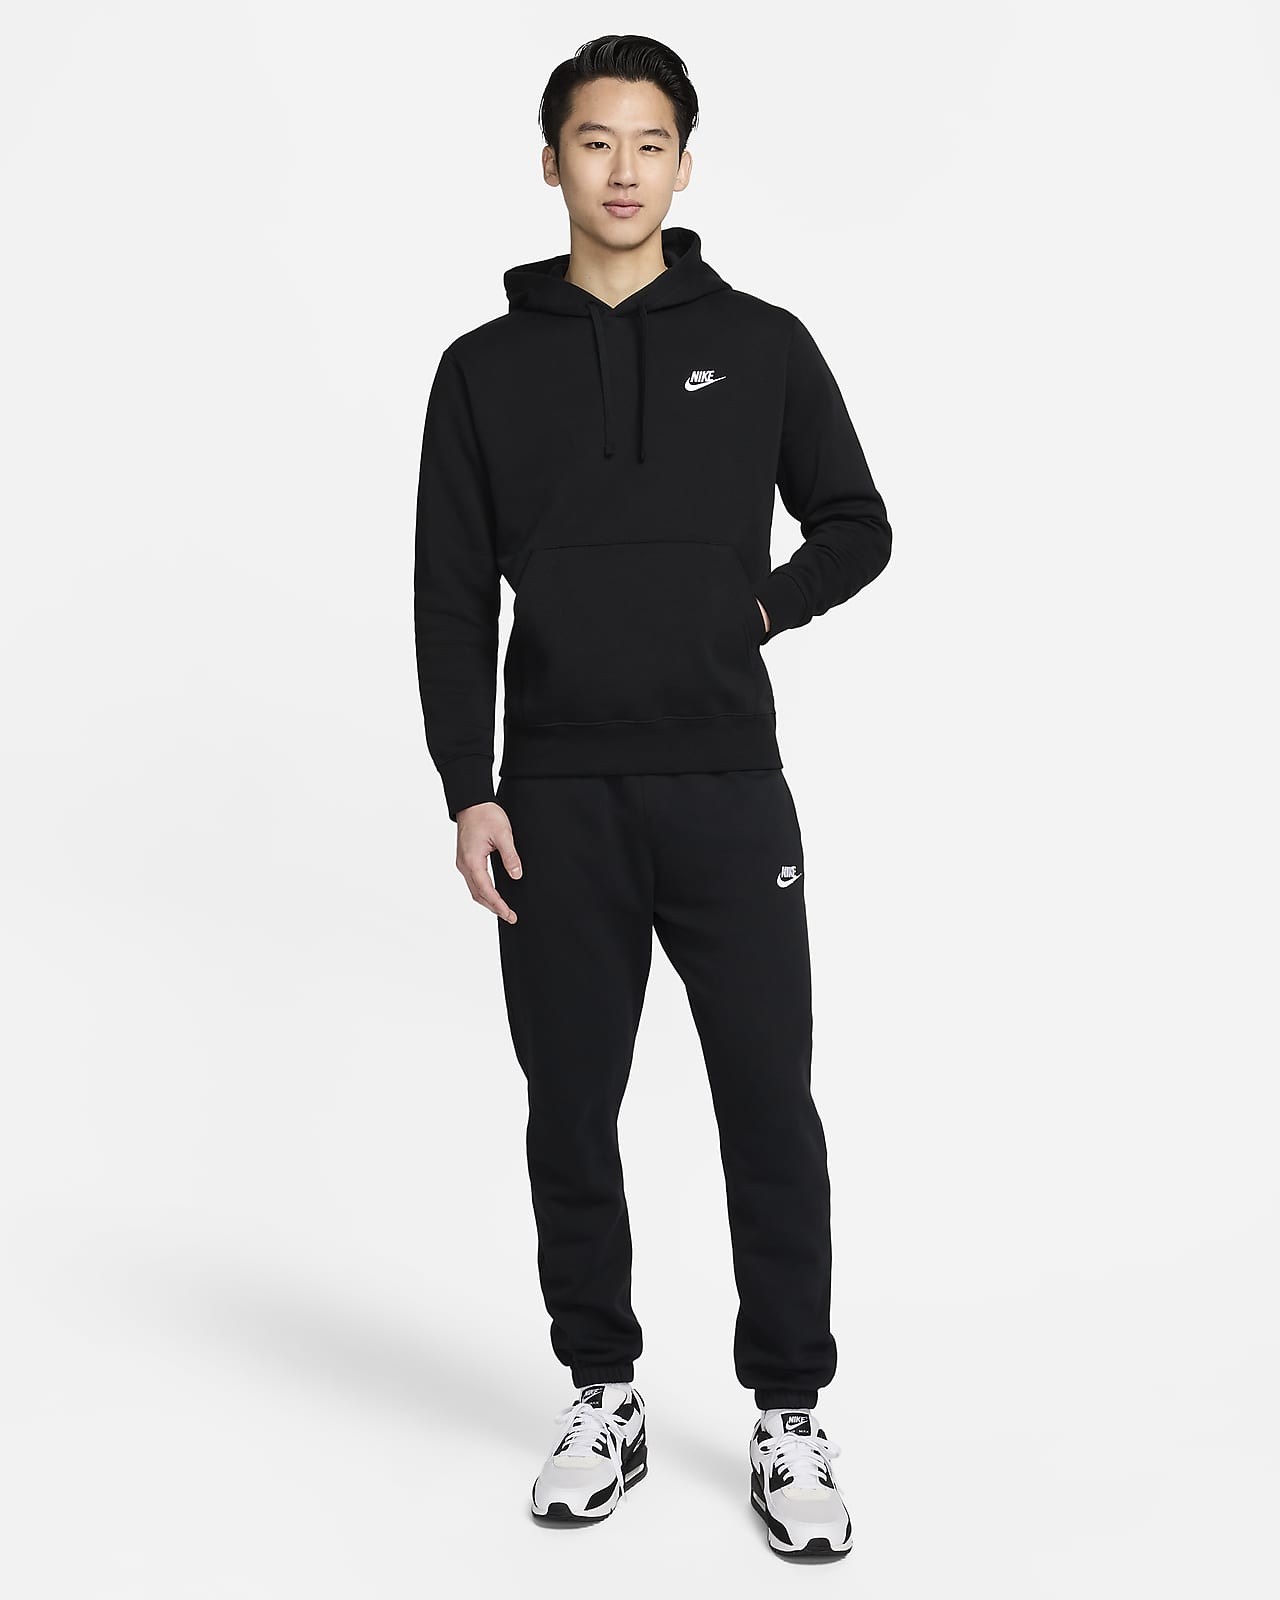 Nike Club Fleece Pullover Longsleeve Men's Hoodie Black/White